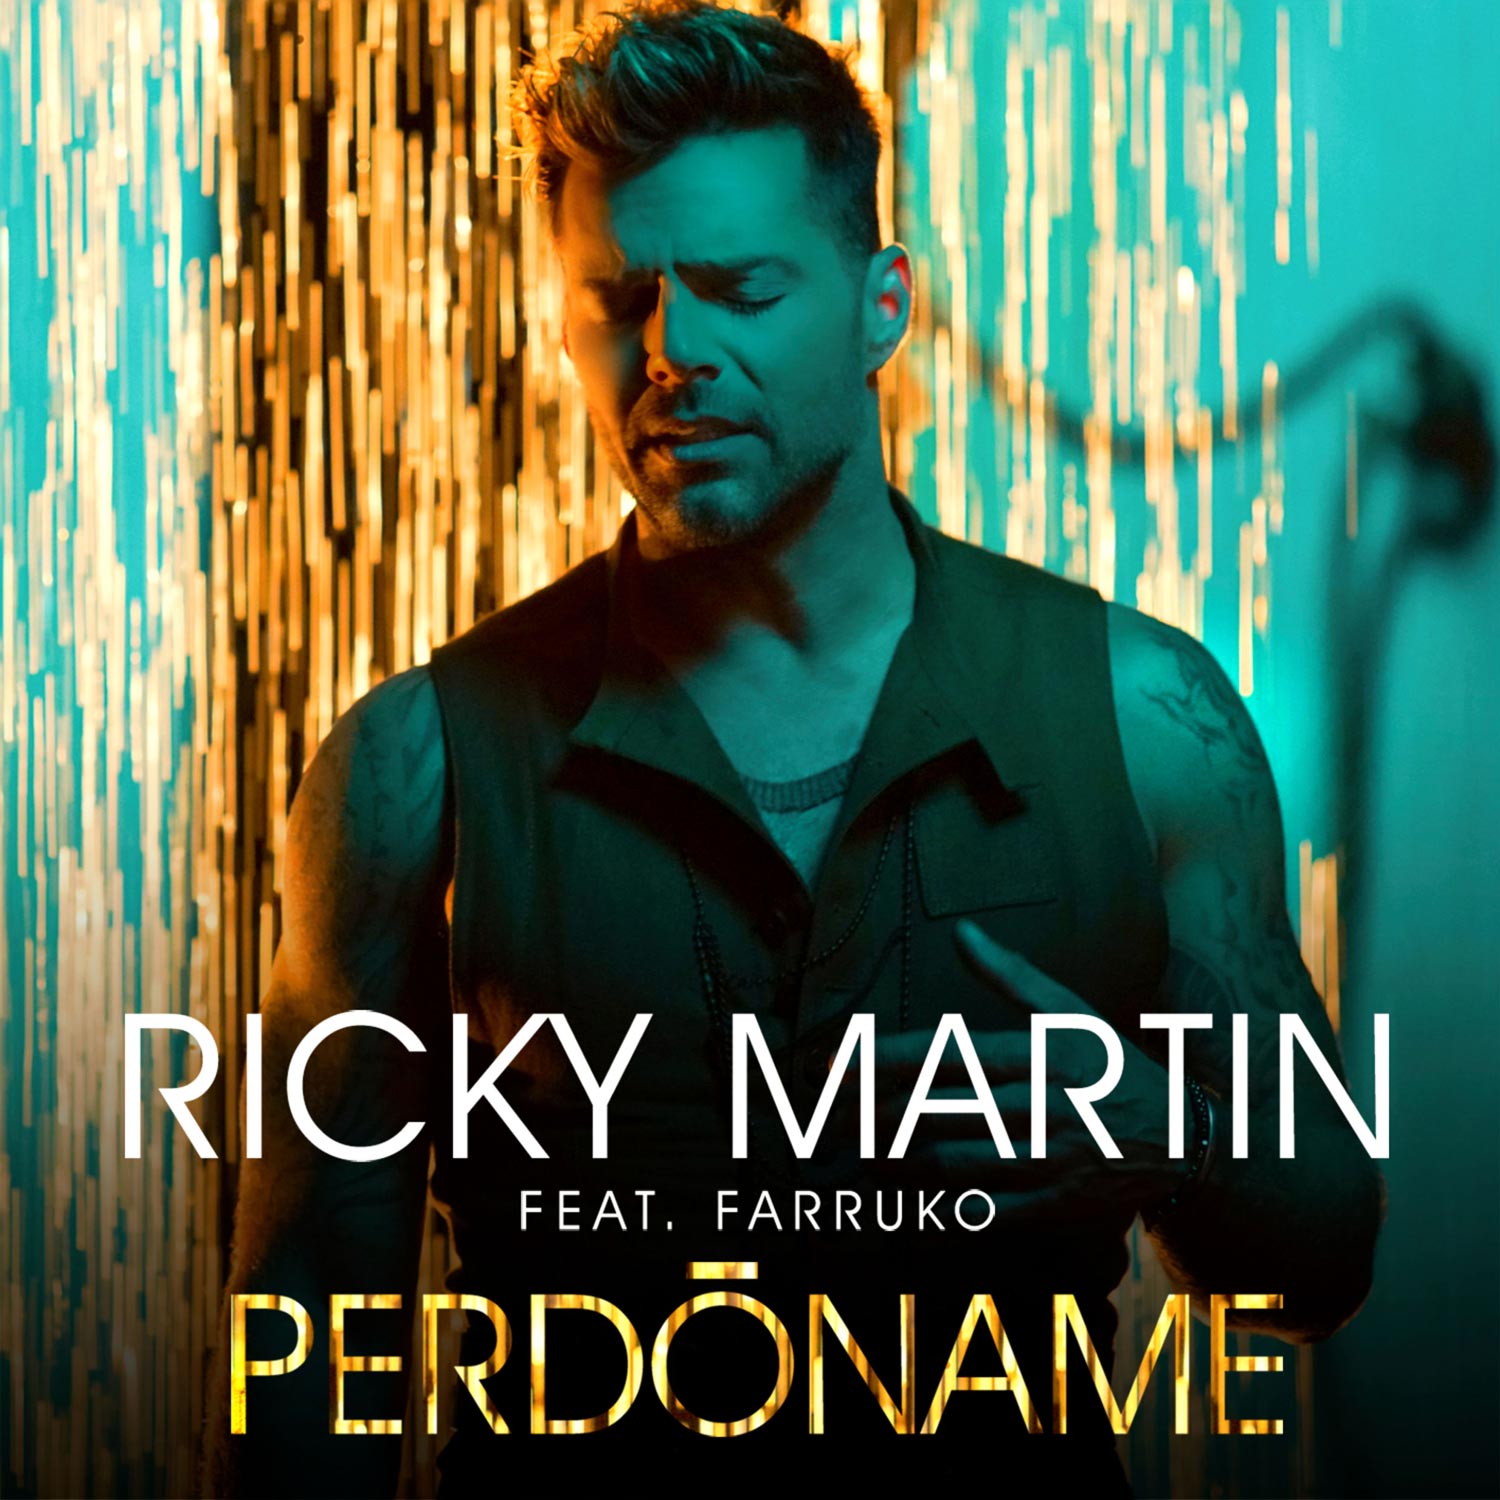 Ricky Martin con Farruko: Perdóname, la portada de la canción